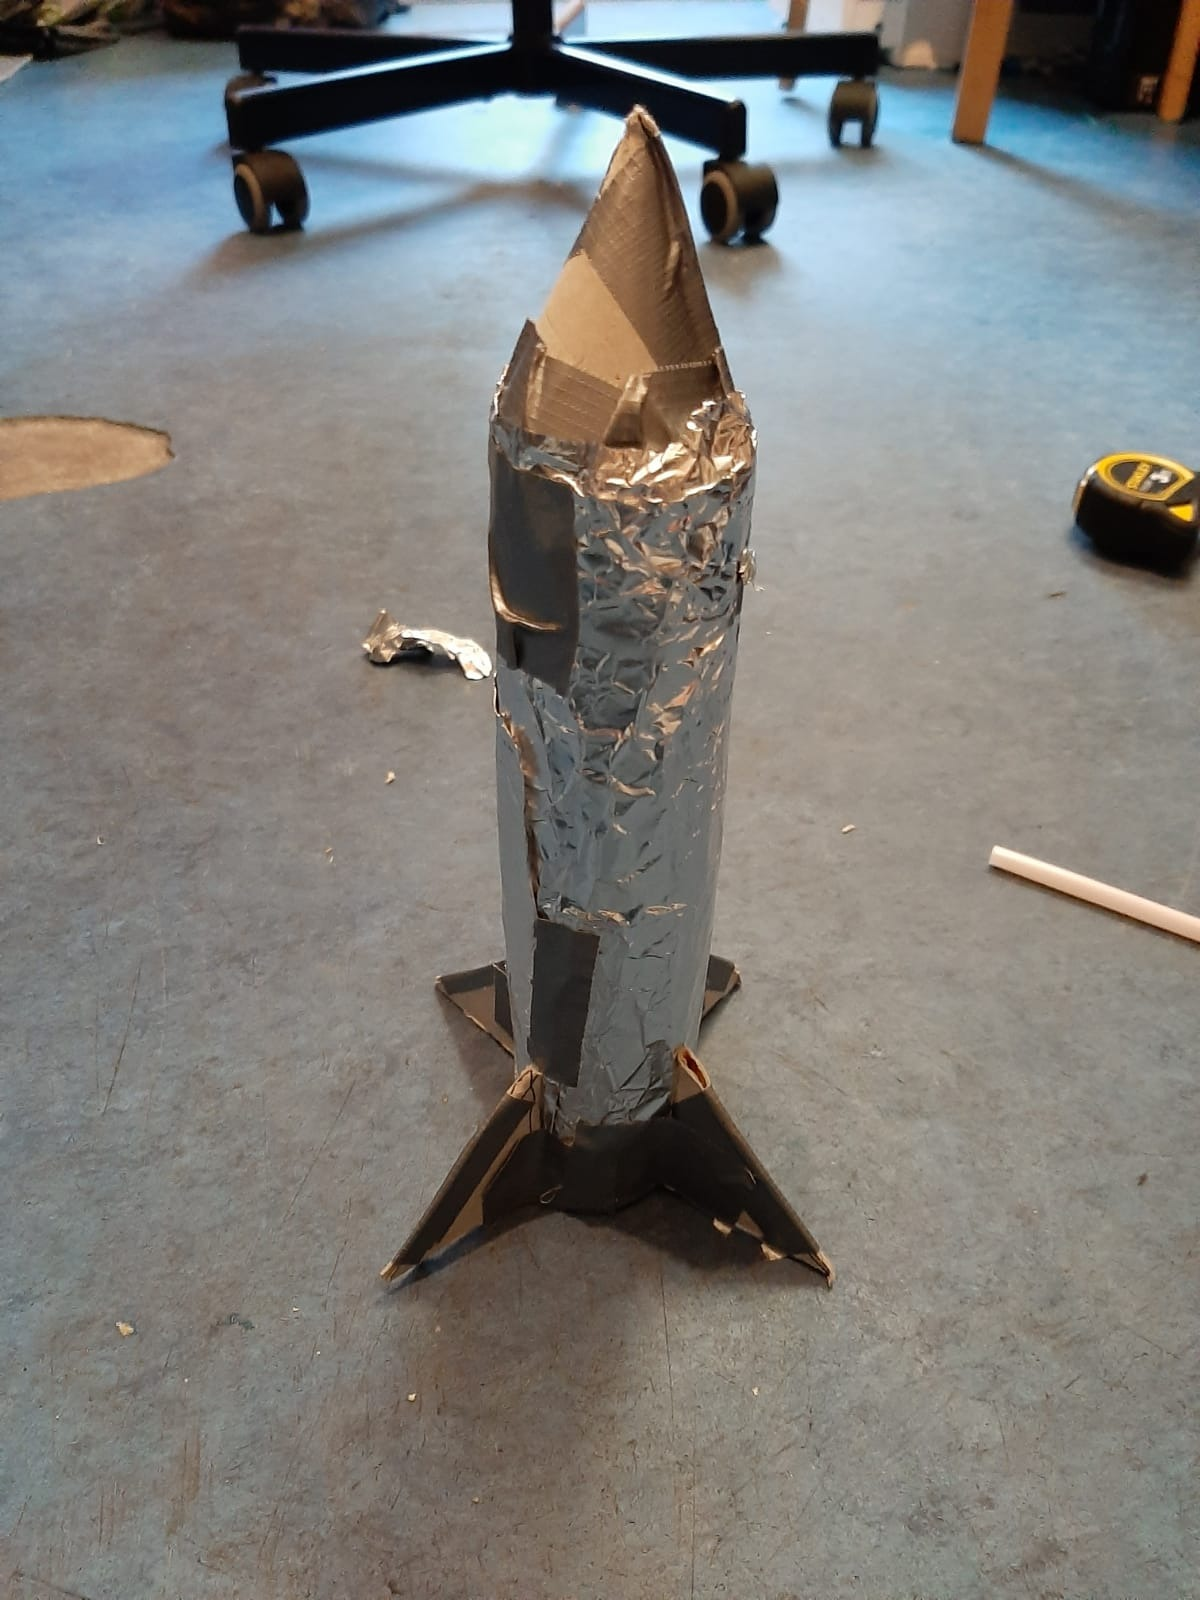 First Rocket Launch (Failure)